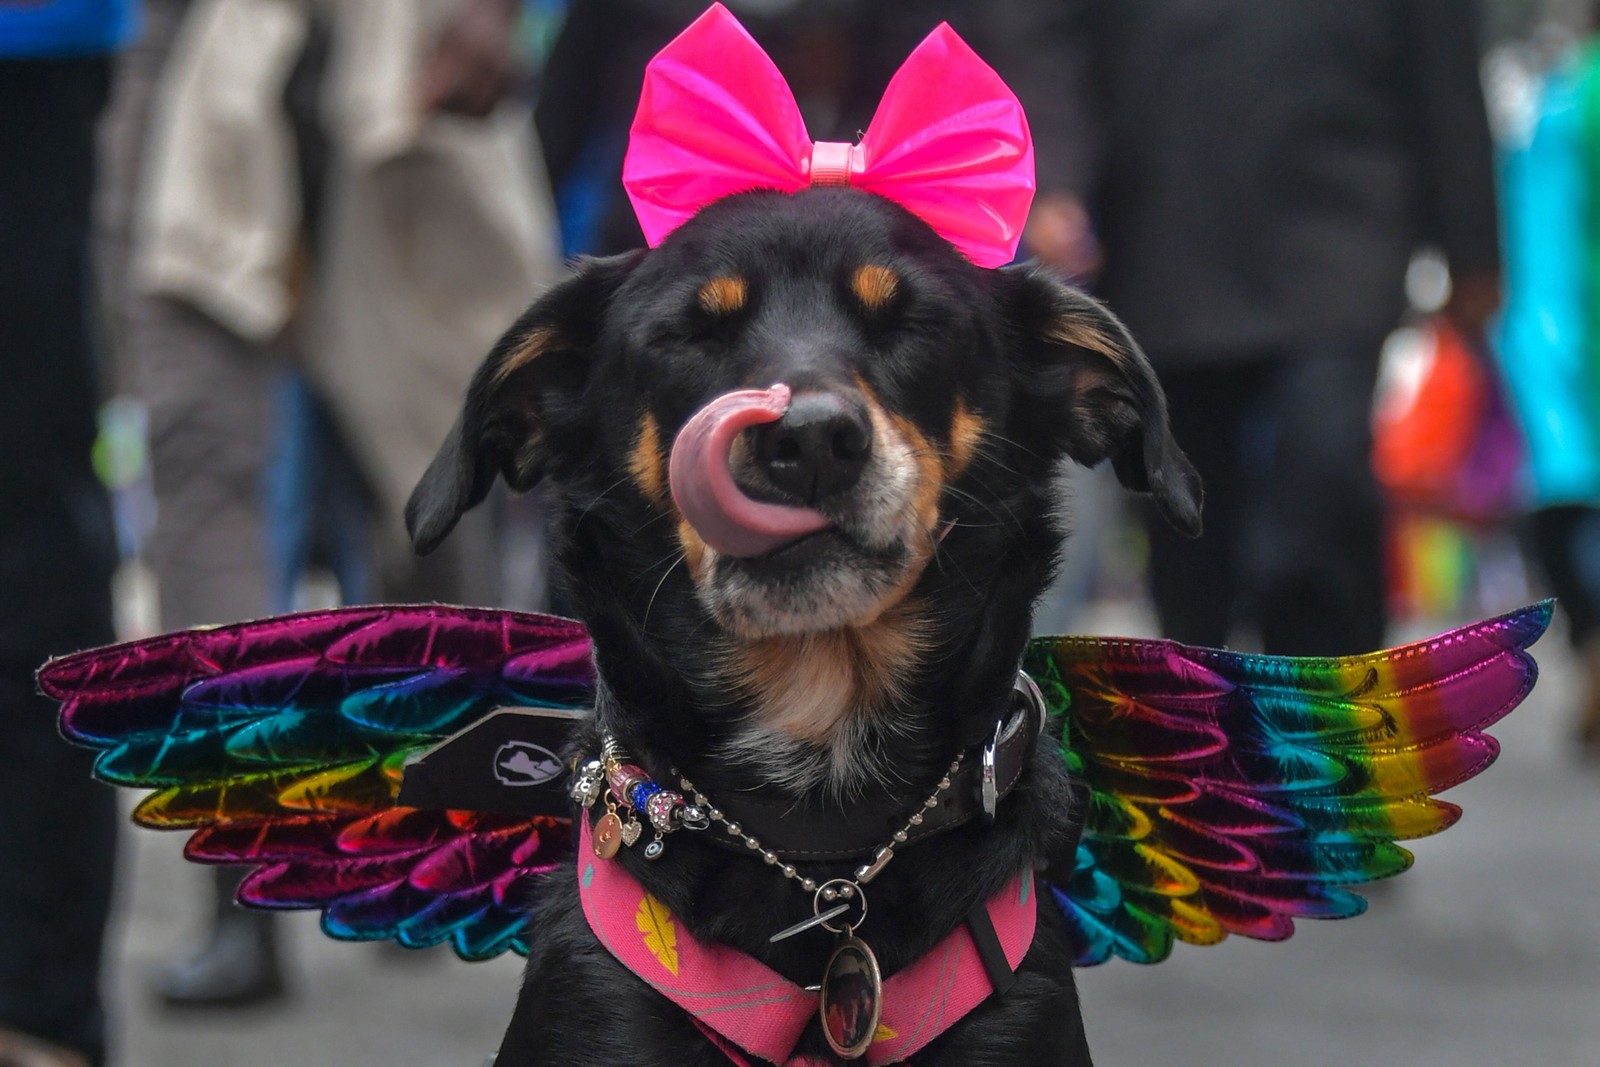 Um cachorro participa da 26ª Parada do Orgulho Gay, com o tema "Vote com orgulho – por uma política que você representa", em São Paulo — Foto: NELSON ALMEIDA / AFP